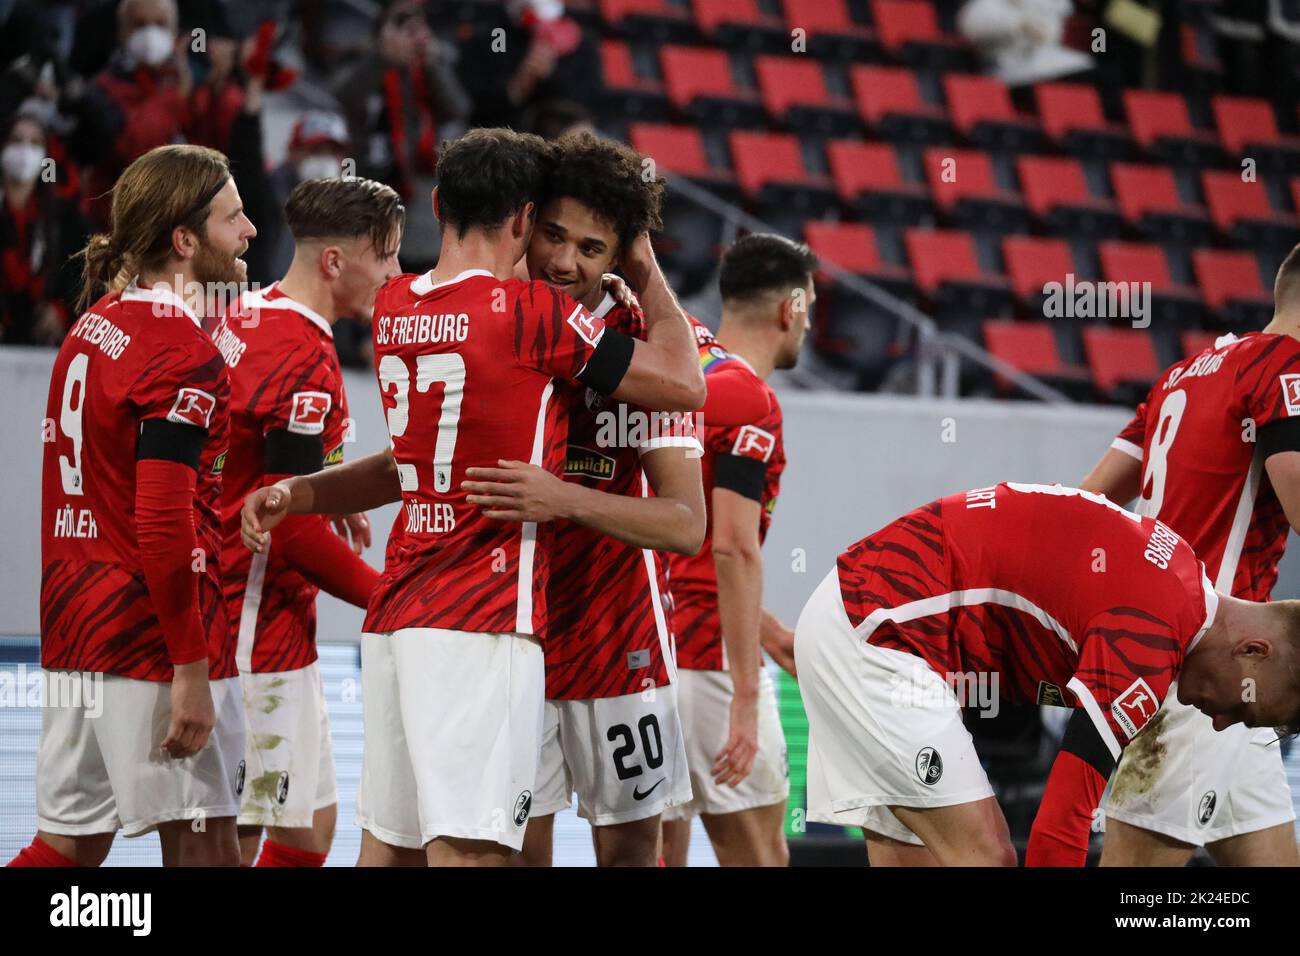 Jubel, Trubel, Heiterkeit - die Freiburger Spieler feiern das Tor von Kevin Schade (SC Freiburg) zum 2:0 Endstand im Spiel der 1. FBL: 21-22: 20. Sptg Foto Stock